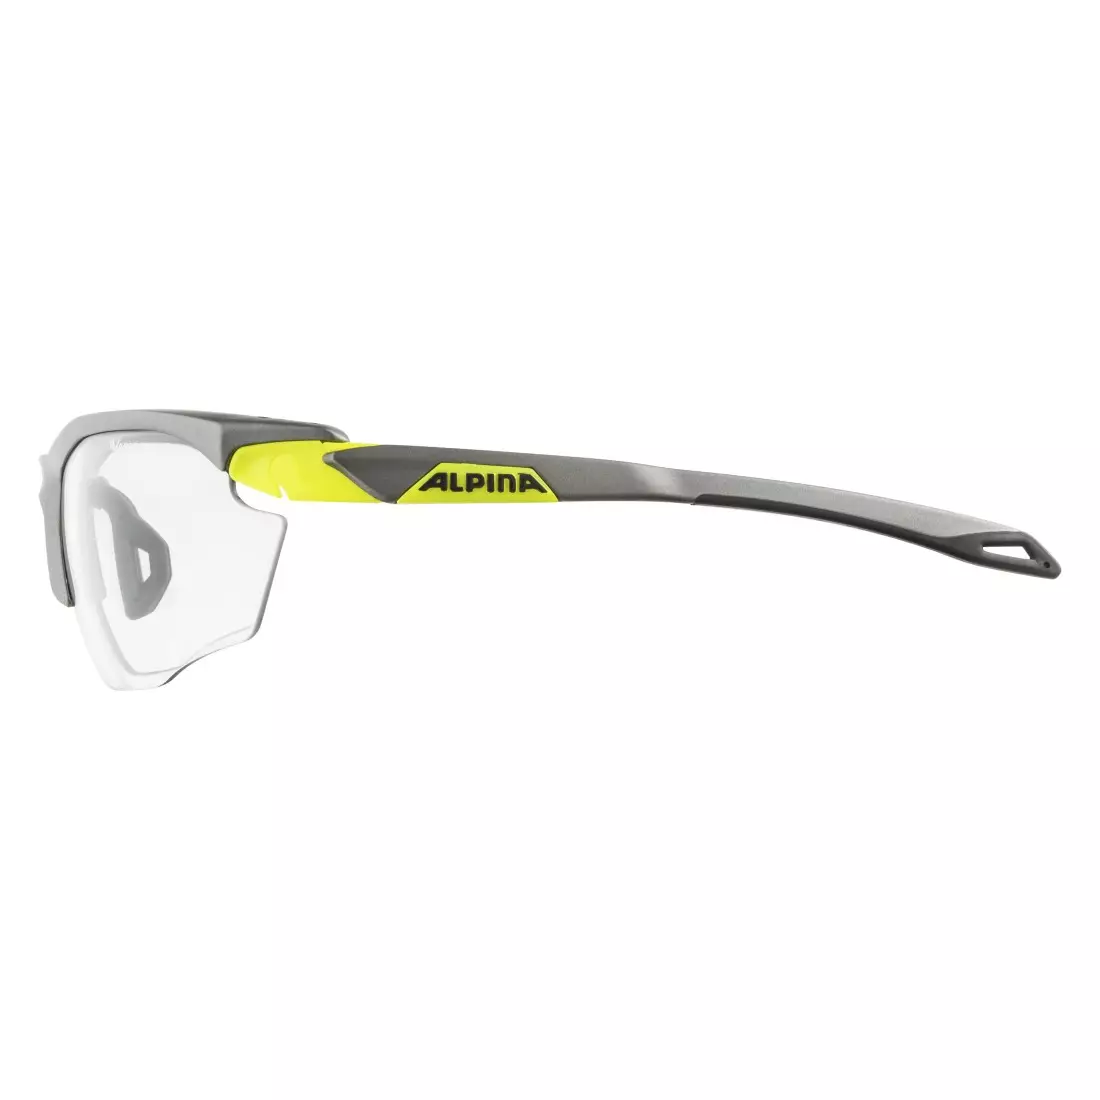 ALPINA photochrome Sportbrillen twist five HR VL+ tin matt- neon yellow A8592126